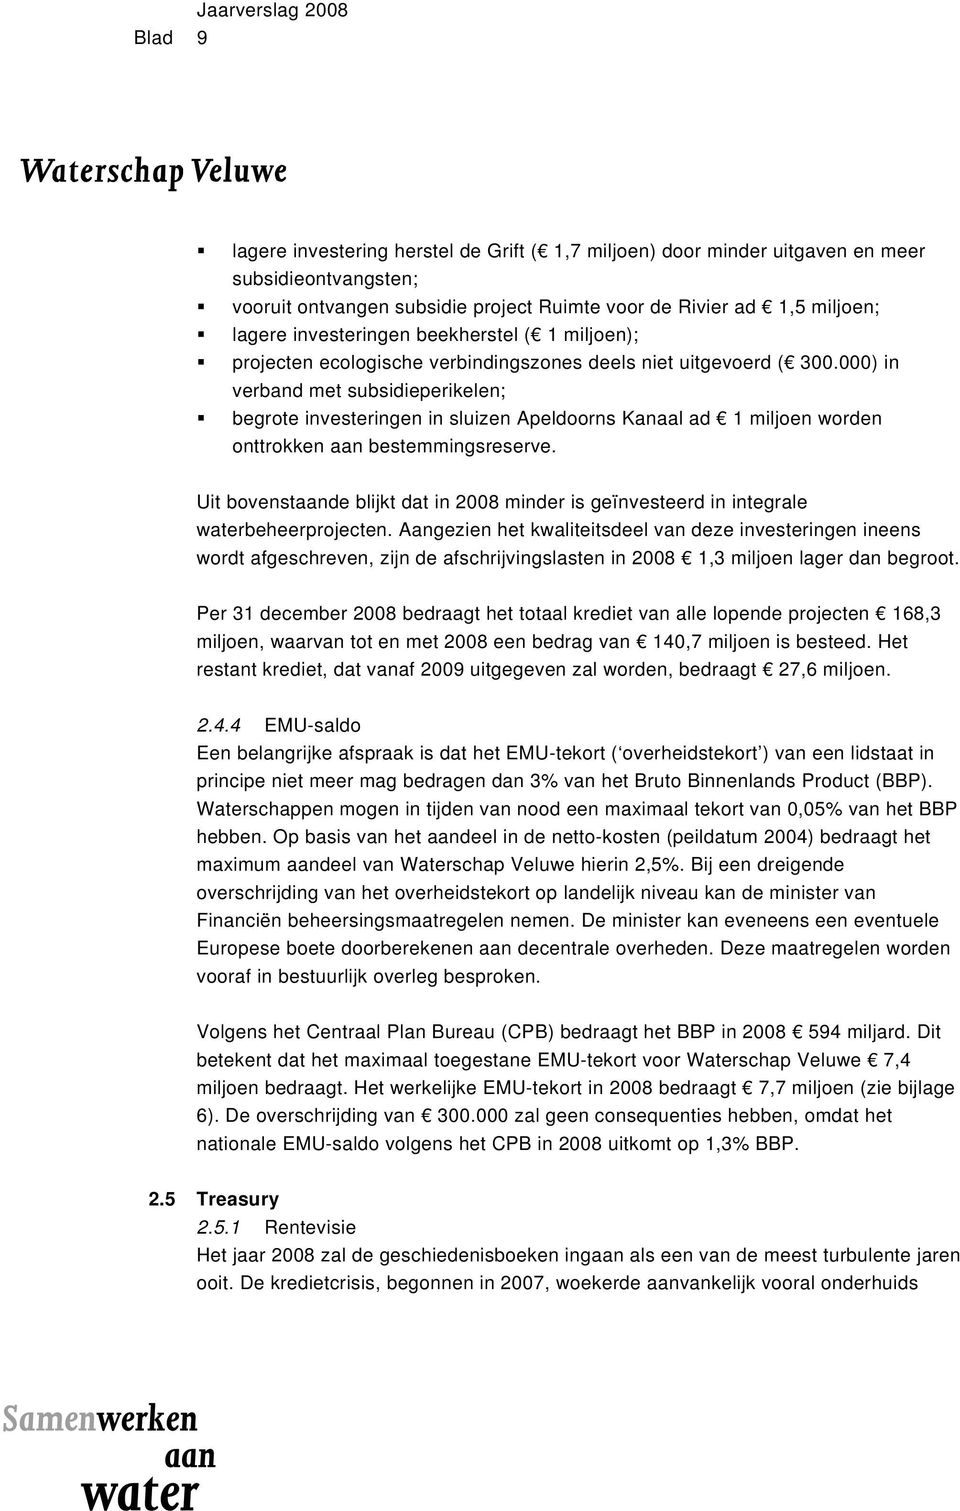 000) in verband met subsidieperikelen; begrote investeringen in sluizen Apeldoorns Kanaal ad 1 miljoen worden onttrokken aan bestemmingsreserve.